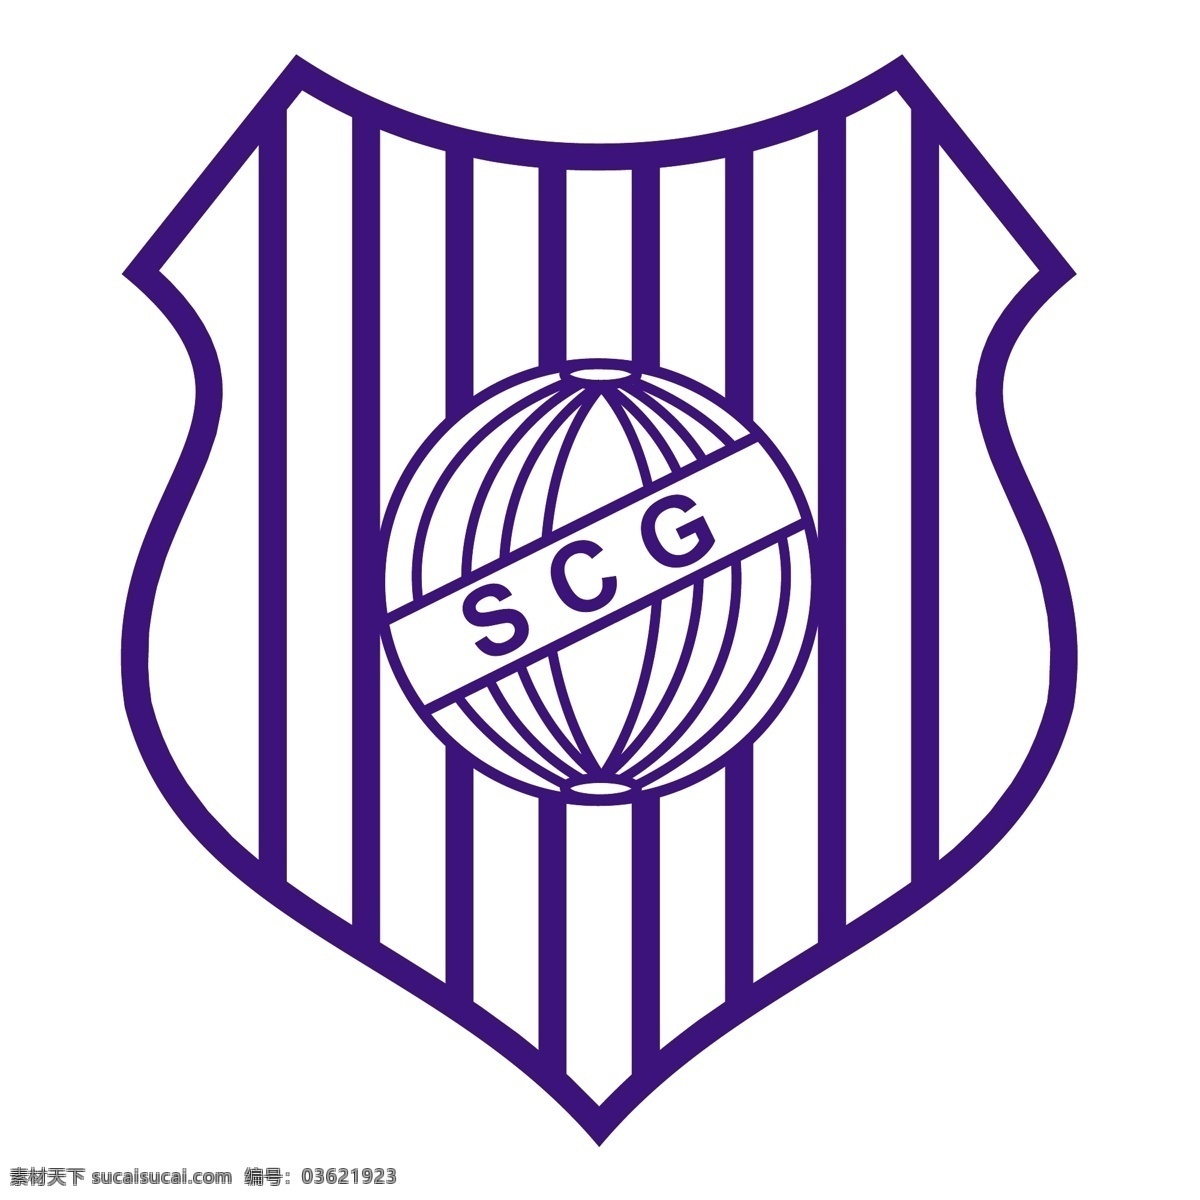 体育俱乐部 guarany 自由 运动俱乐部 de 克 鲁兹 阿尔塔 rs 标志 psd源文件 logo设计